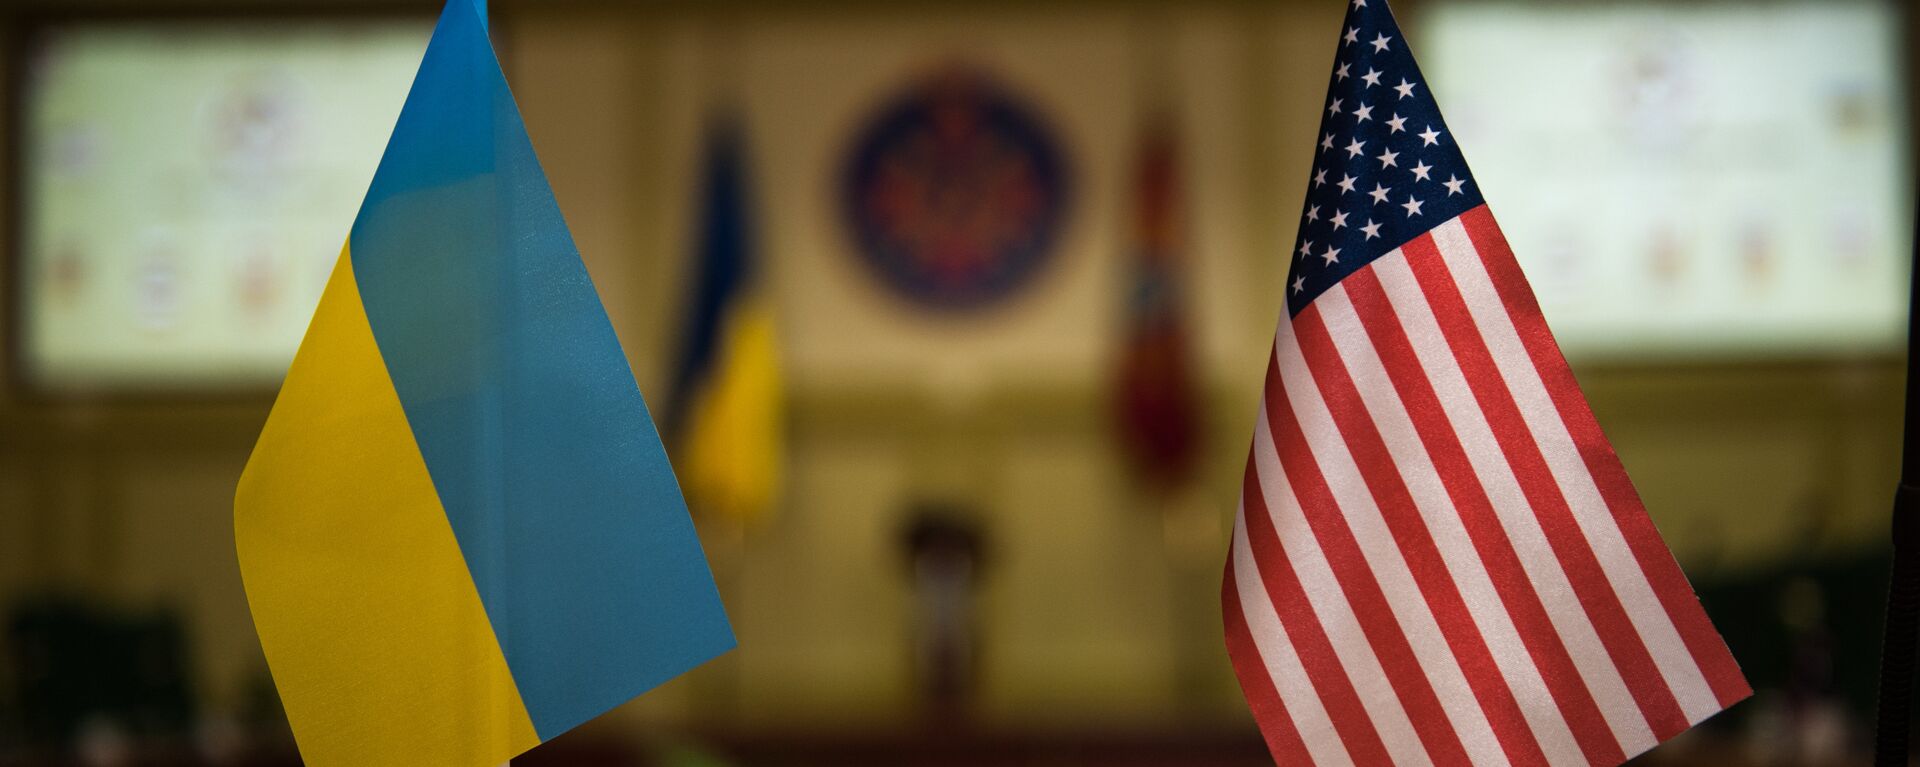 Banderas Ucrania y EEUU - Sputnik Mundo, 1920, 22.09.2021